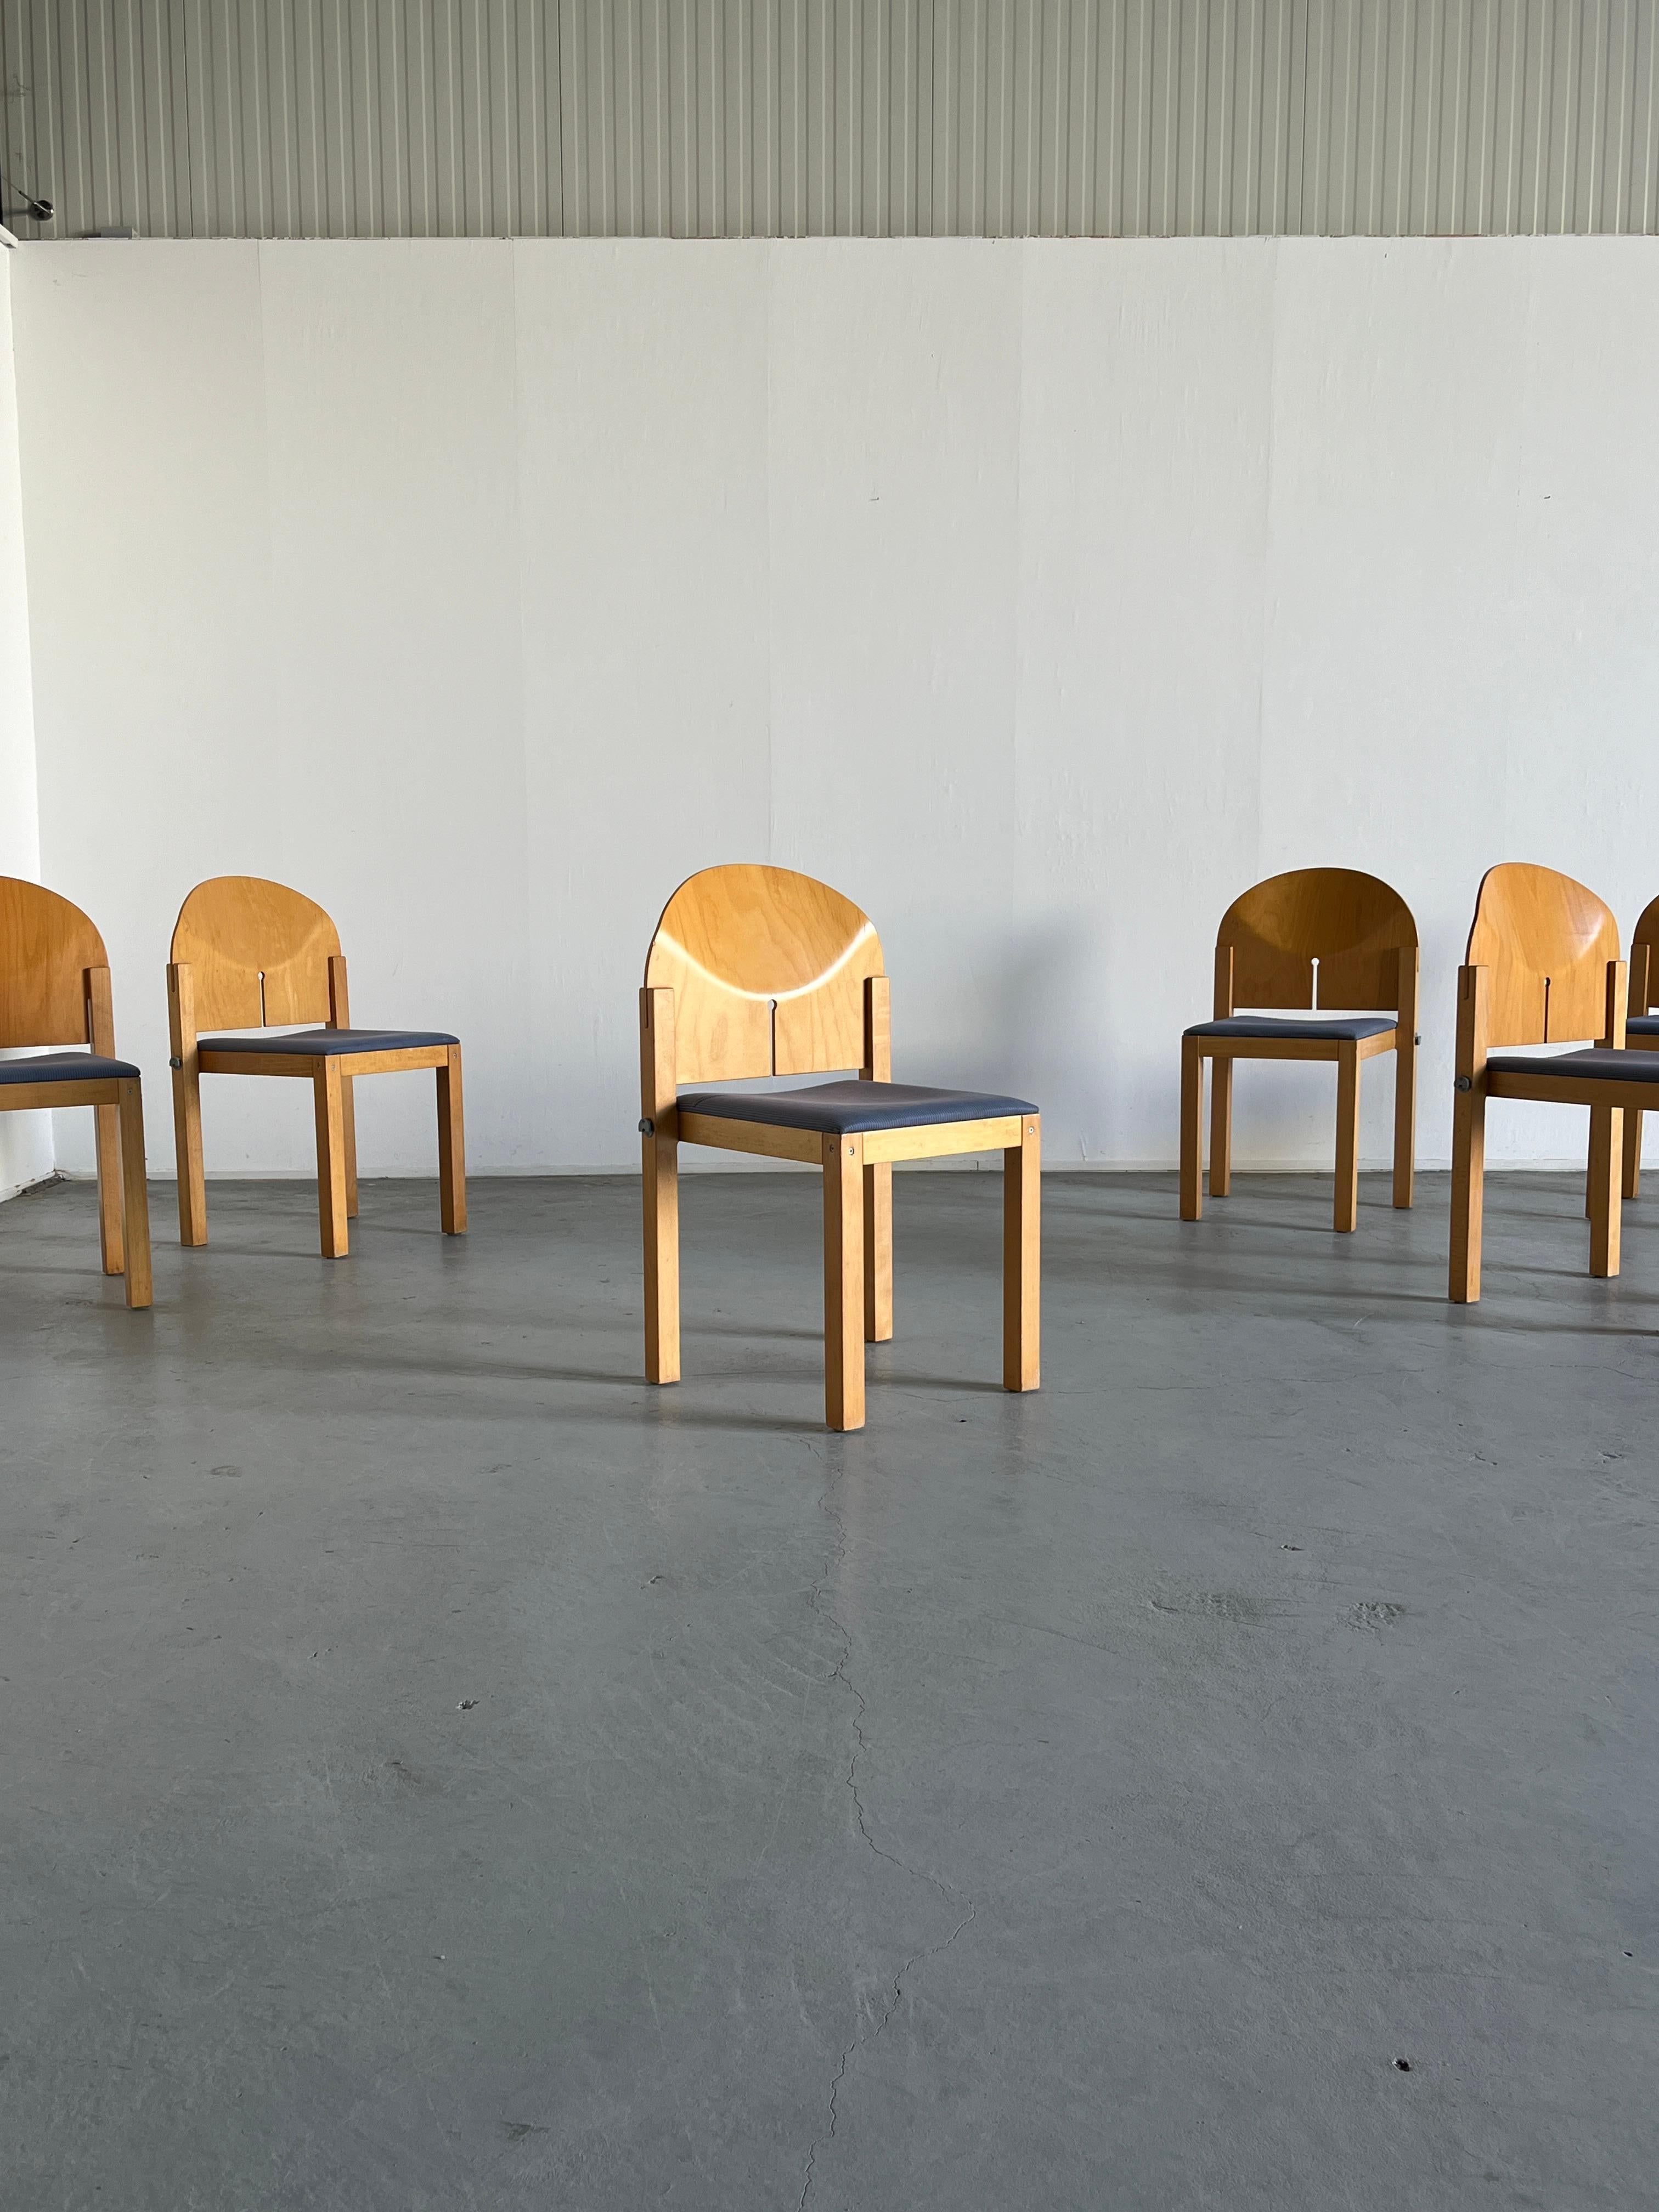 Six magnifiques chaises de salle à manger postmodernes des années 1980 par Arno Votteler pour Bisterfeld et Weiss.
Haute qualité de production.
Rappelant les designs d'Afra et Tobia Scarpa pour B&B Italia dans les années 1970.
Peut être relié pour